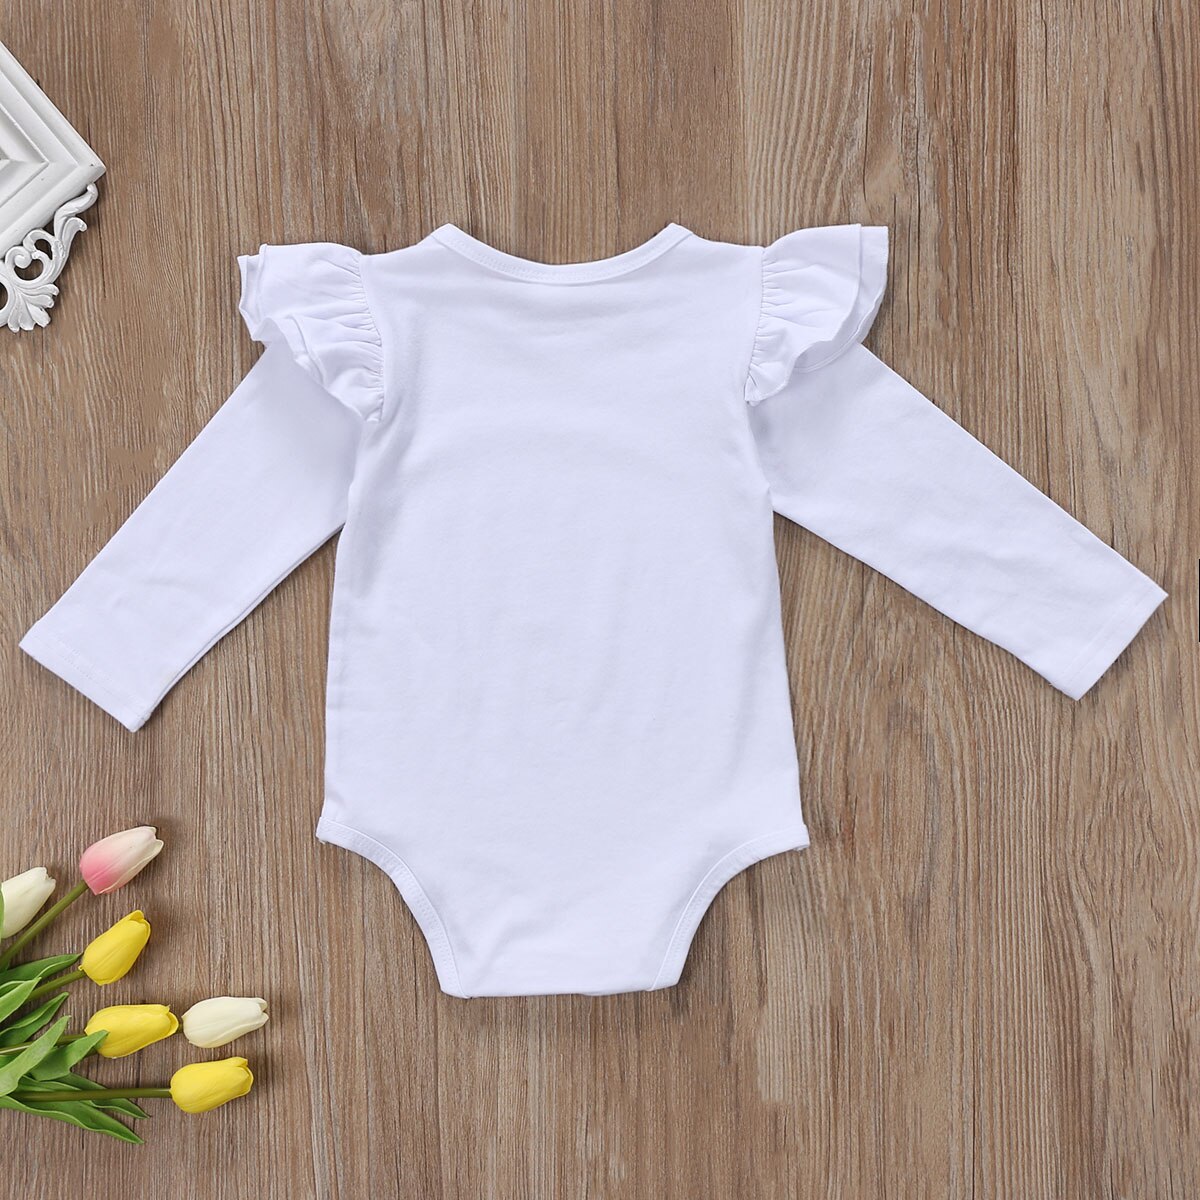 Sød nyfødt baby pige langærmet flæser bodysuit jumpsuit hvid ren sort outfit tøj 0-18m